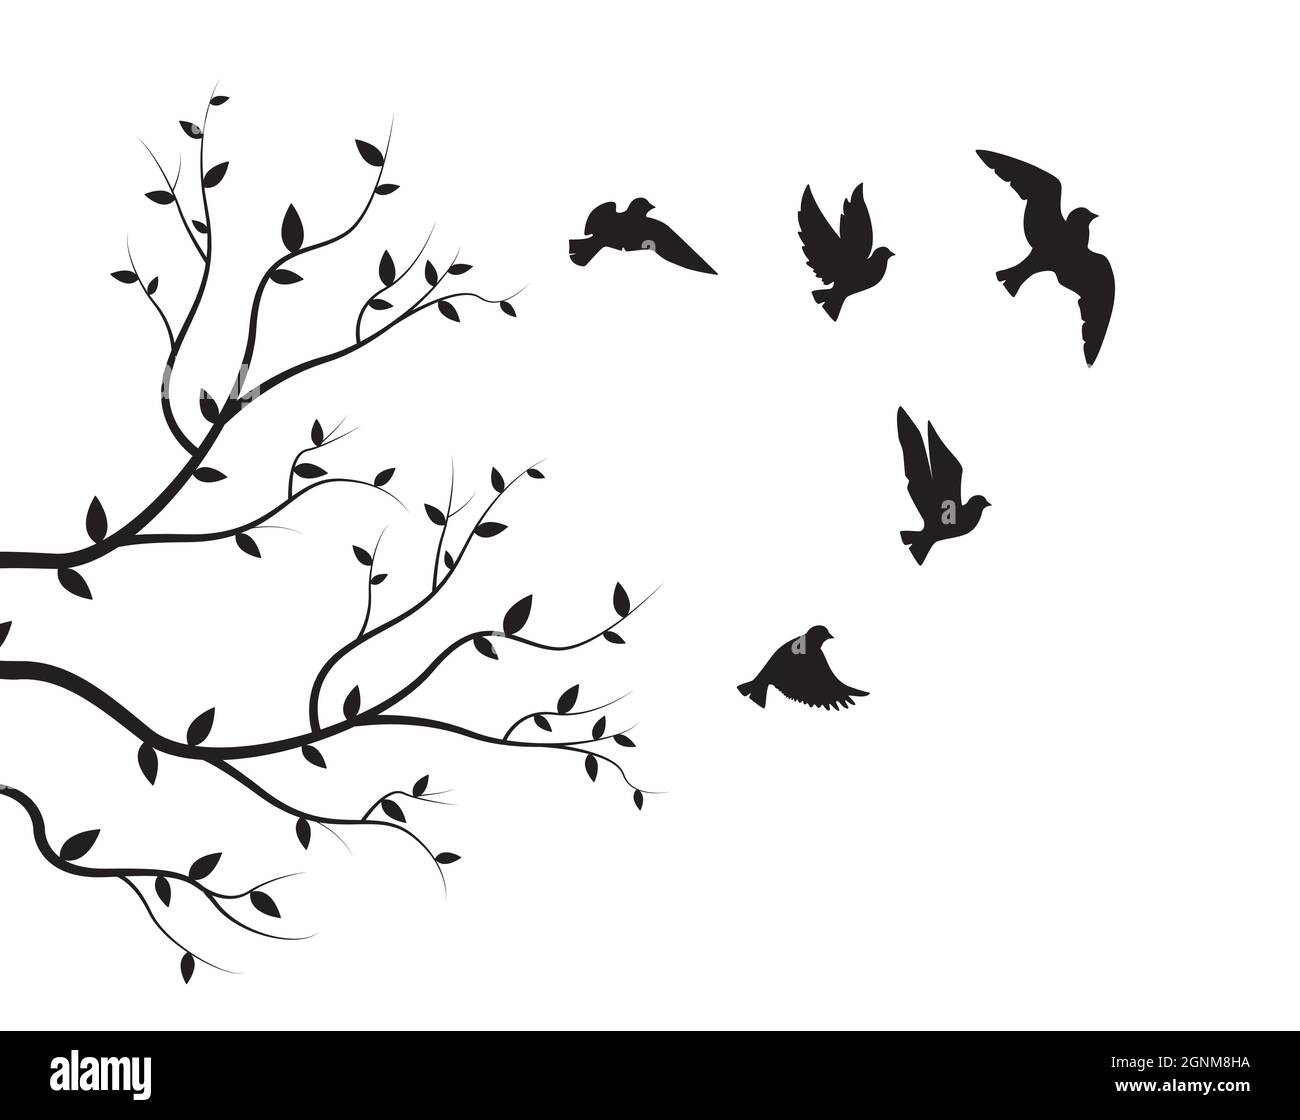 Silhouettes d'oiseaux volants et illustration de branches isolées sur fond blanc, vecteur. Décalcomanies murales naturelles, œuvres d'art murales, œuvres d'art. Noir et blanc minimal Illustration de Vecteur